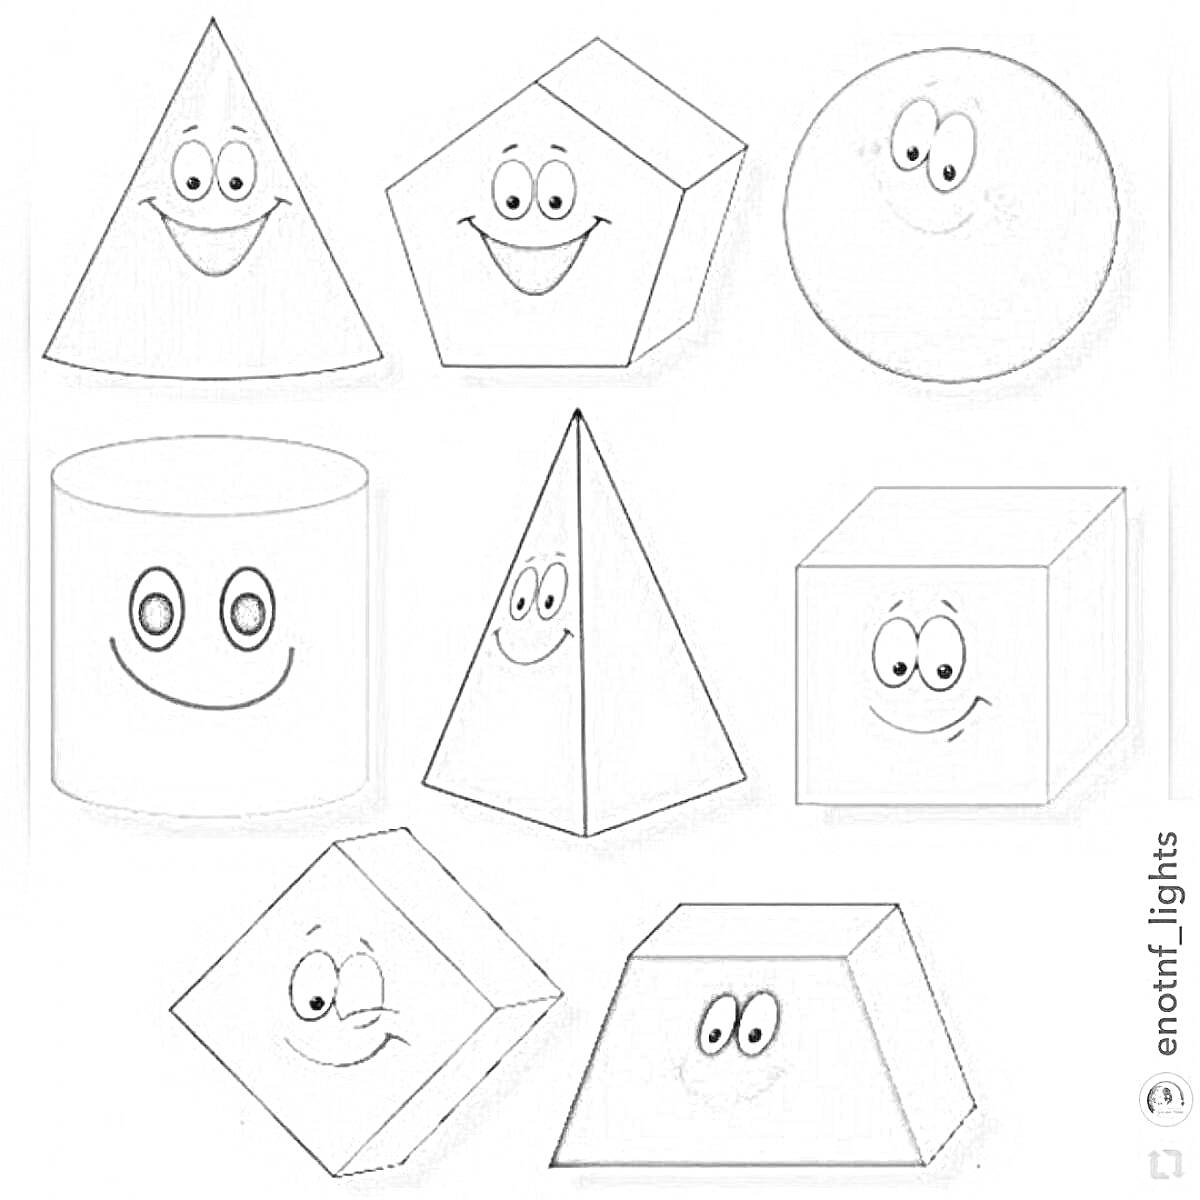 Раскраска Геометрические фигуры с лицами: пирамида, пятиугольник, сфера, цилиндр, тетраэдр, куб, параллелограмм, прямоугольник